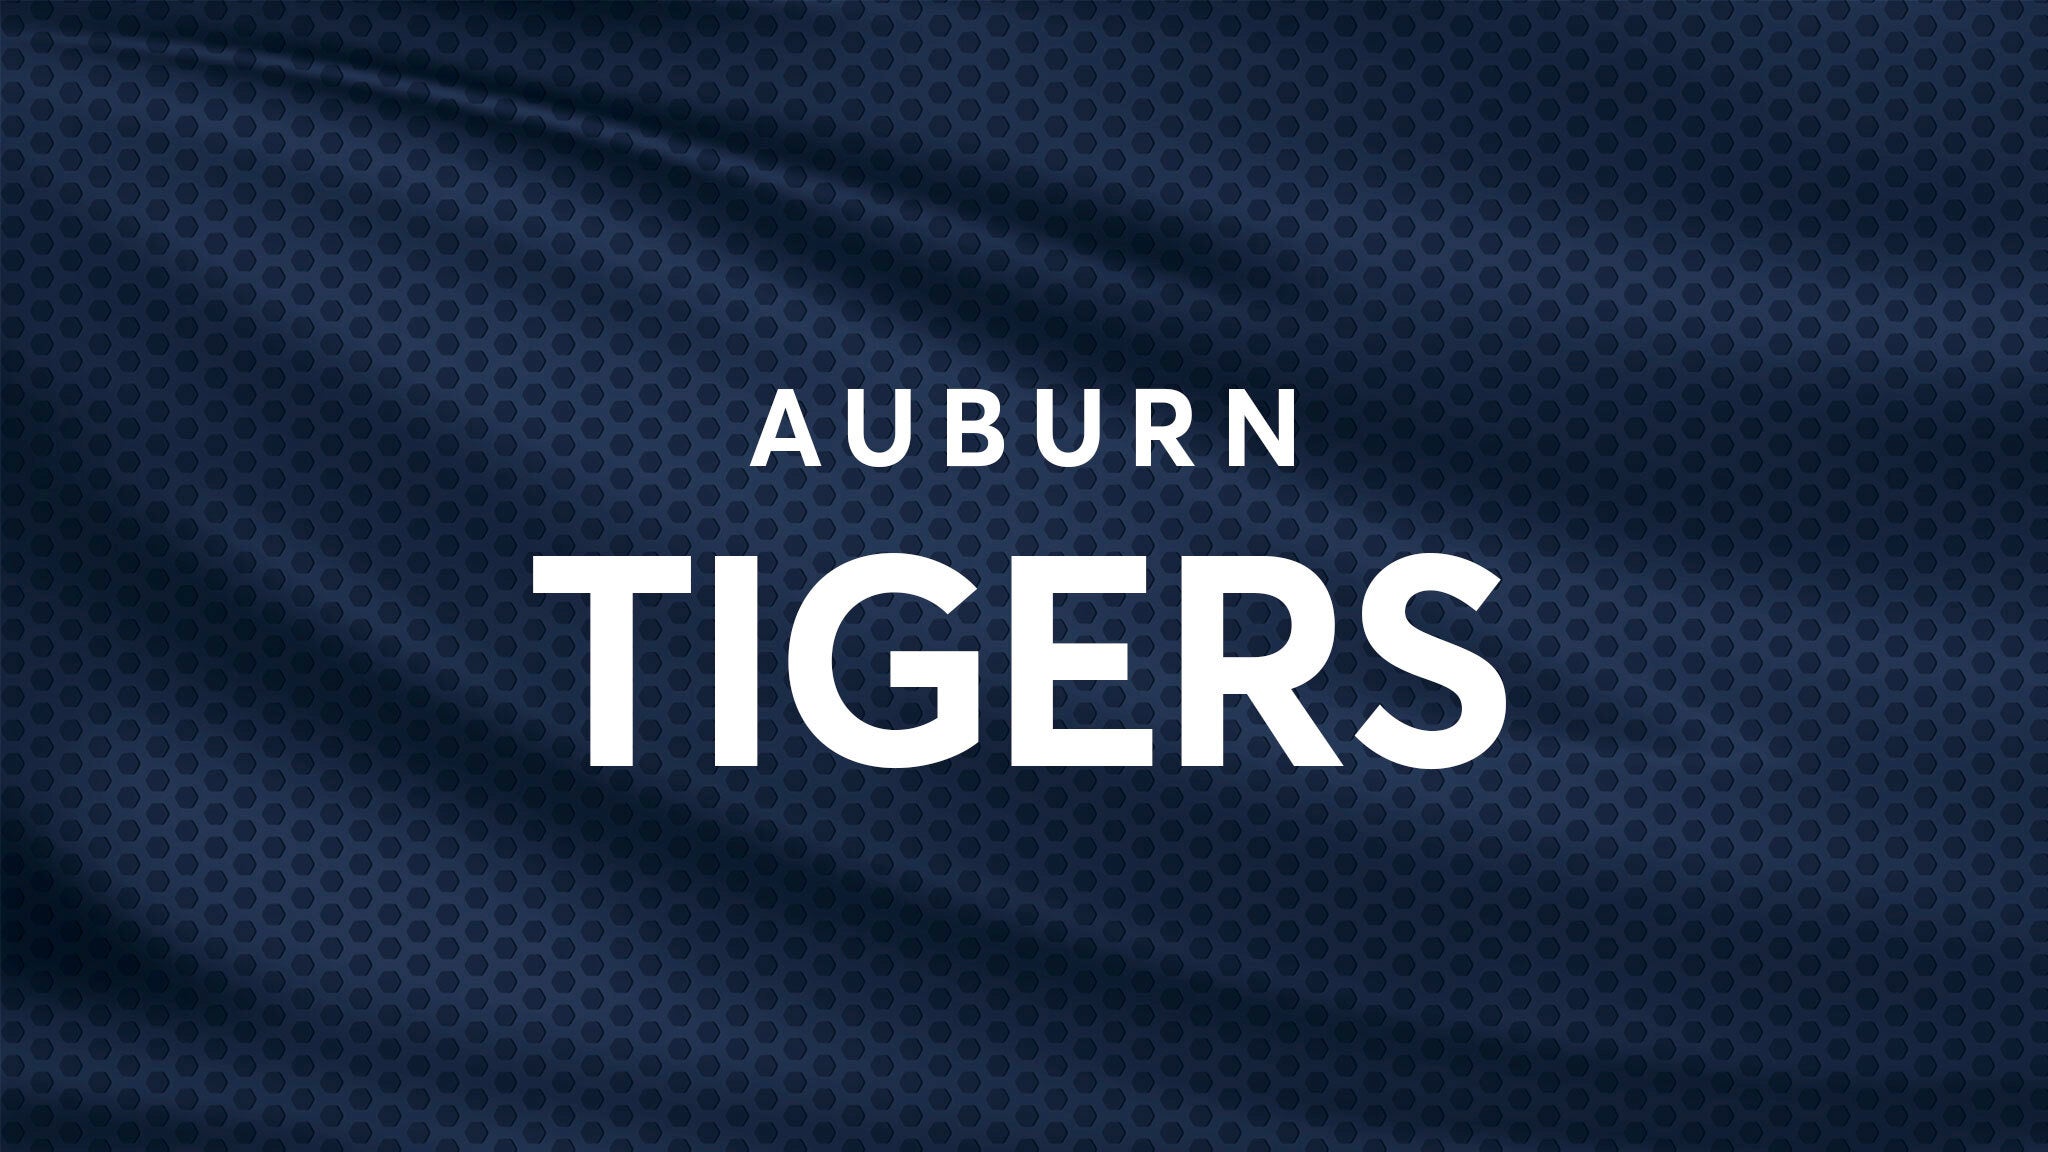 Auburn Tigers Football vs. Oklahoma Sooners Football hero